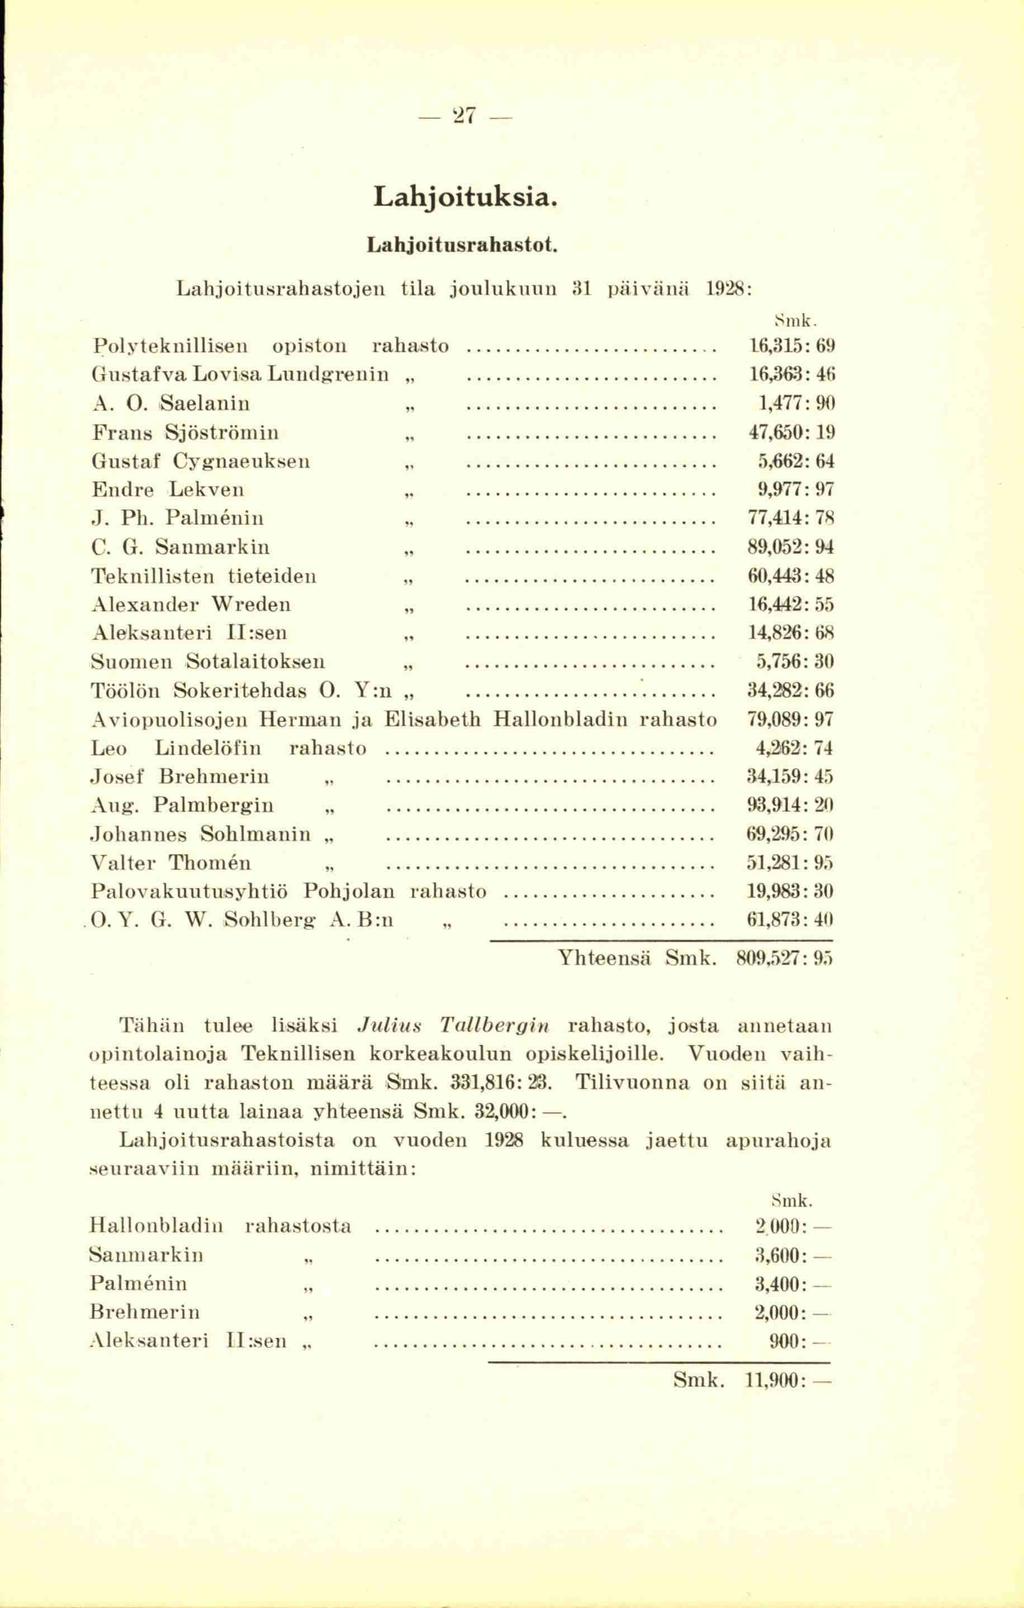 27 Lahjoituksia. Lahjoitusrahastot. Lahjoitusrahastojen tila joulukuun 31 päivänä 1928: Smk. Polyteknillisen opiston rahasto... 16,315:69 Gustaf va Lovisa Luudgrenin... 16,363: 46 A. 0.